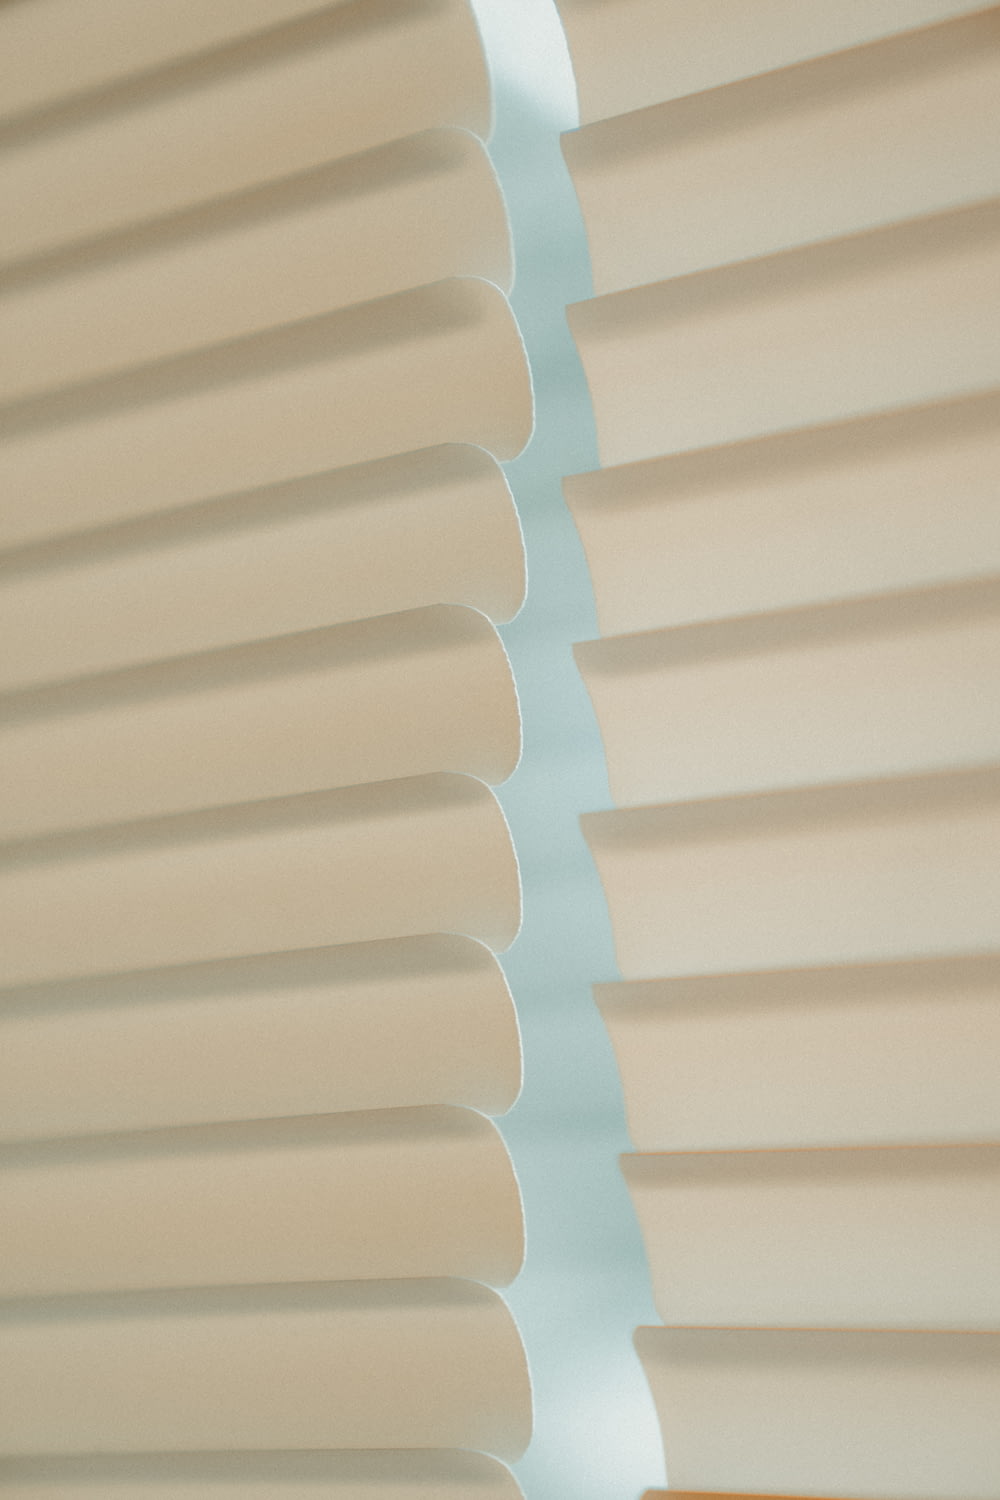 white Venetian blinds